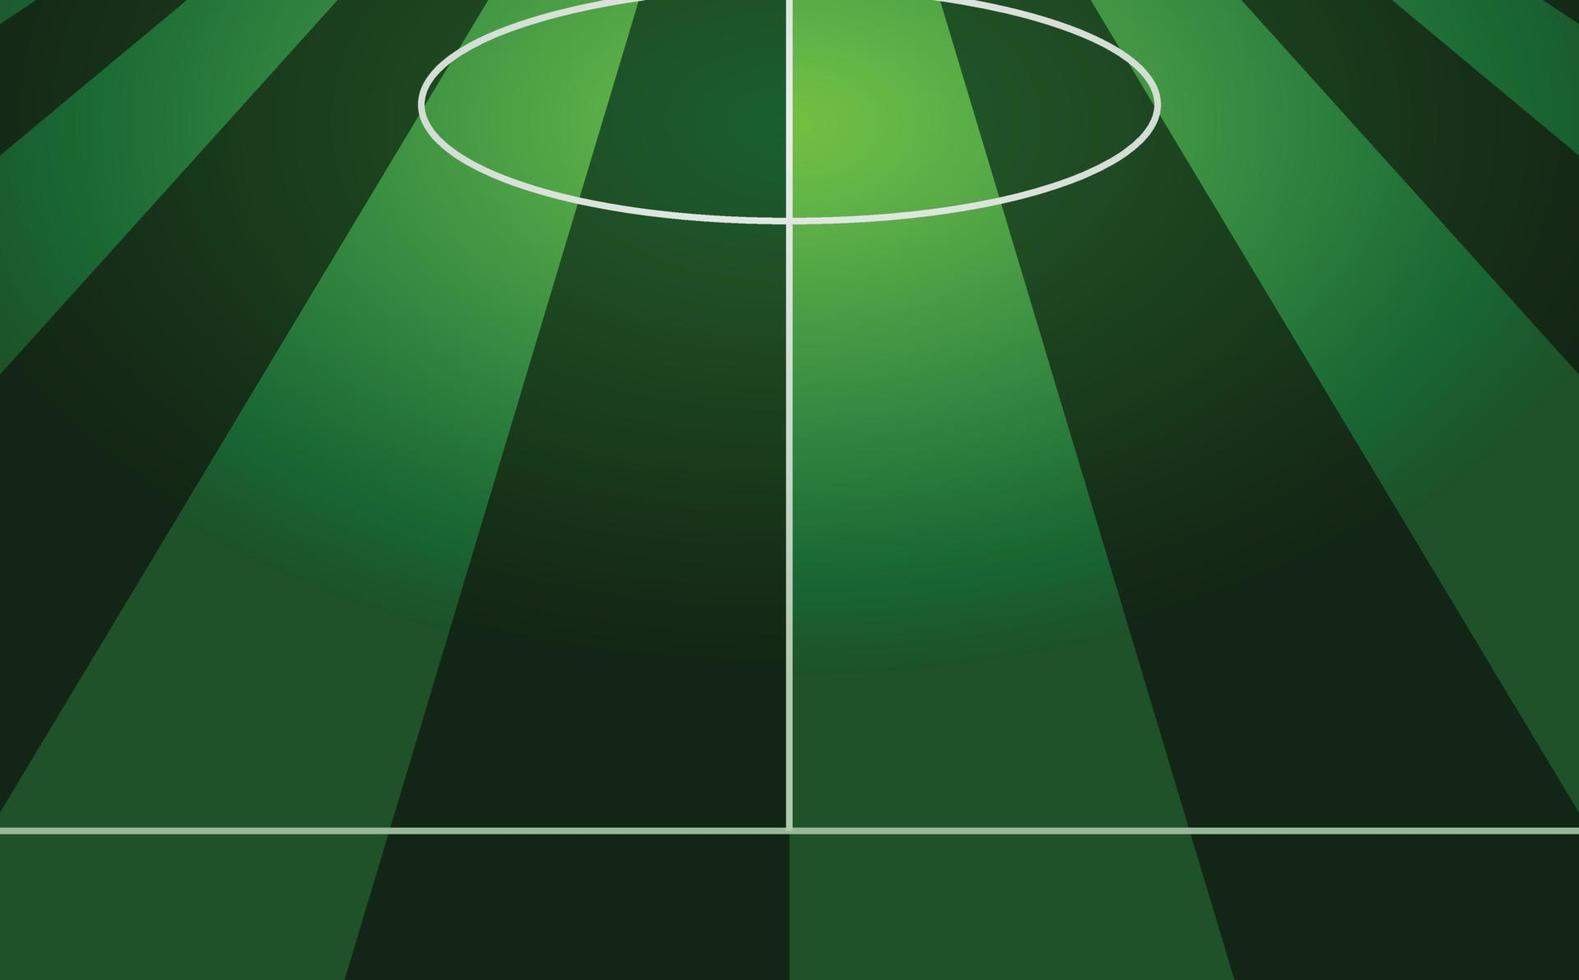 Fußball Feld Hintergrund Design Vorlage zum Poster, Flyer, Banner und mehr. vektor